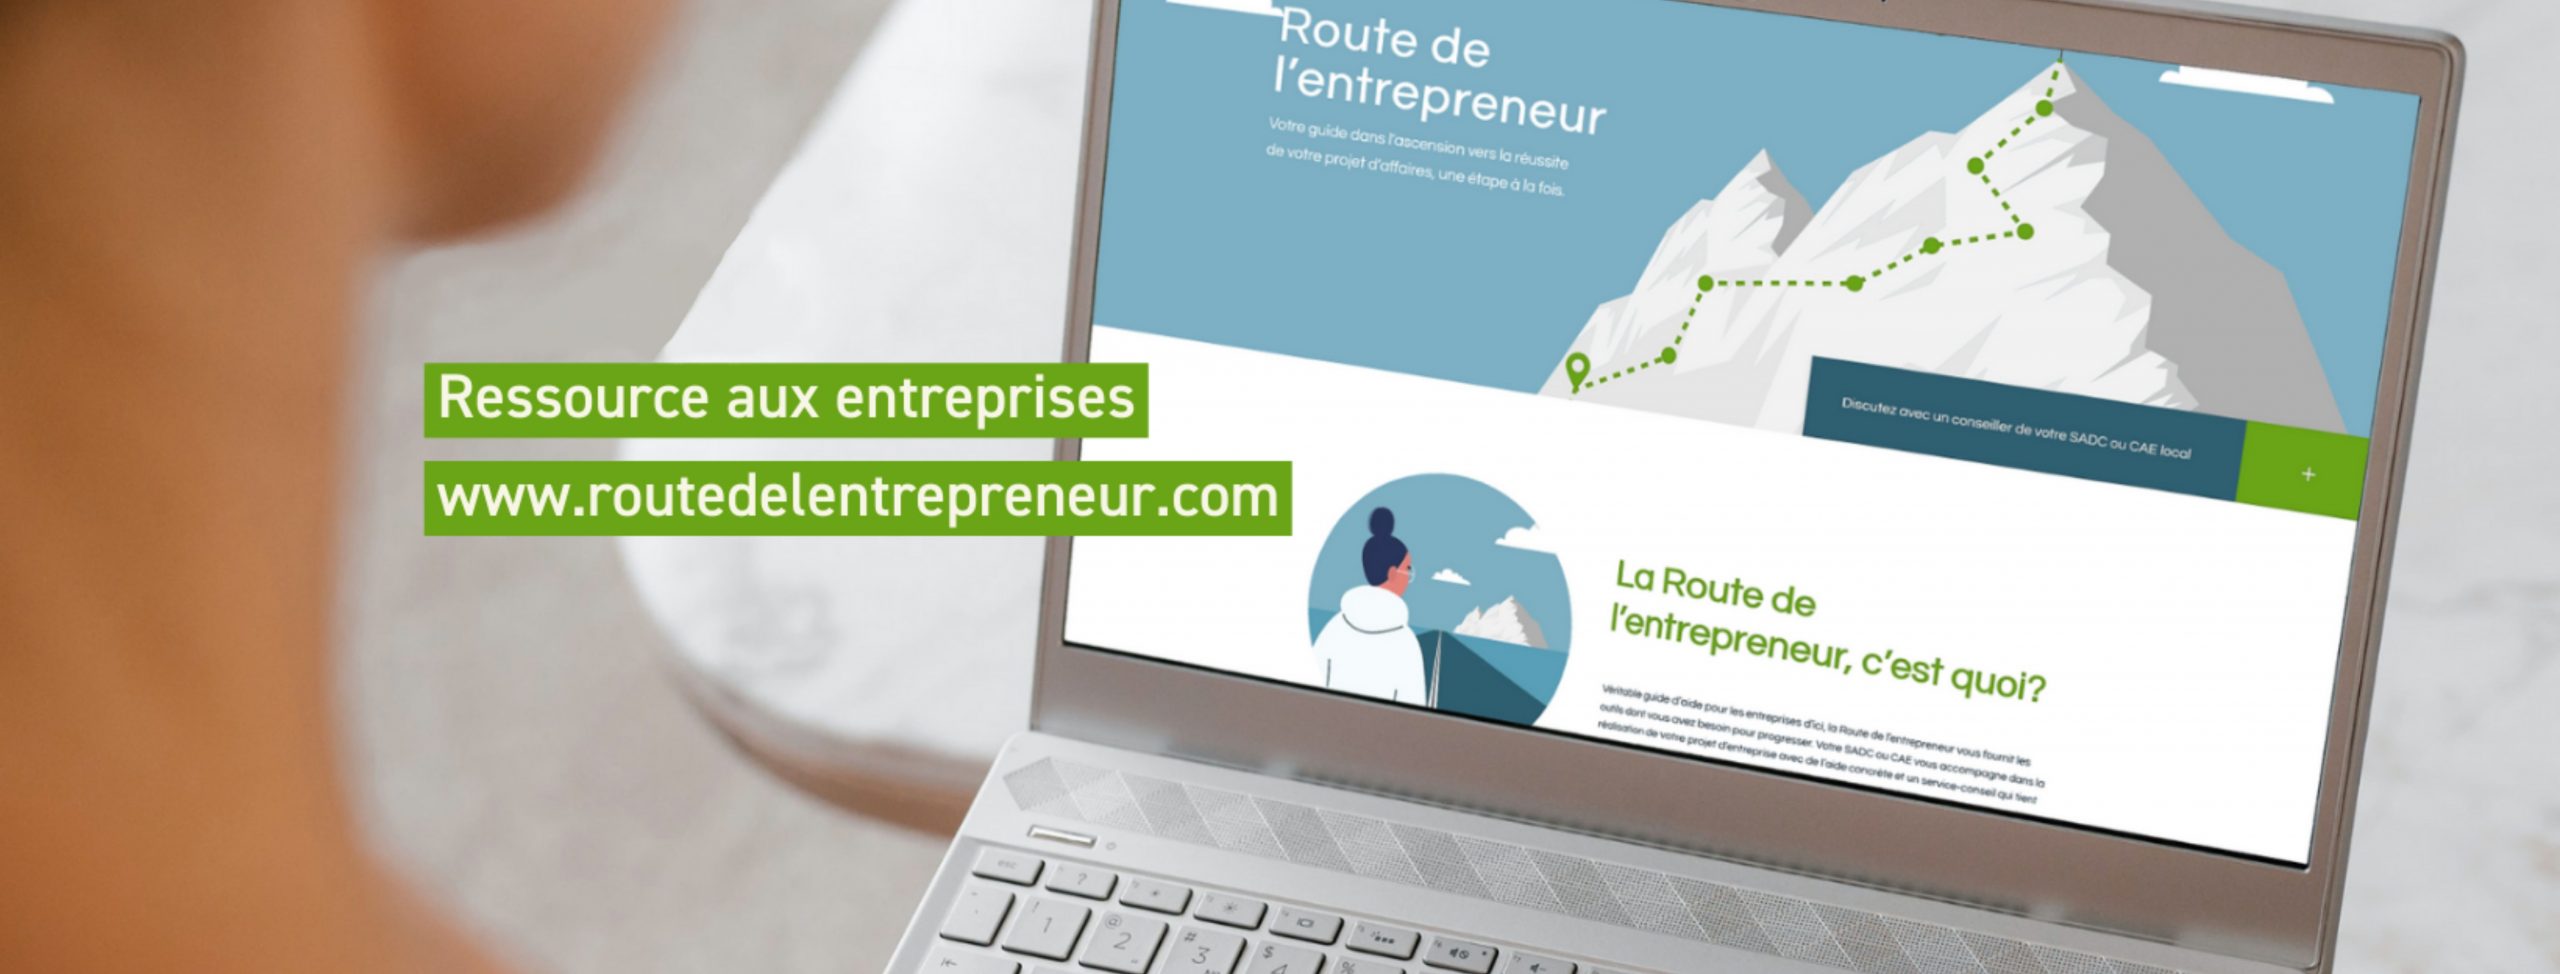 Route de l'entrepreneur